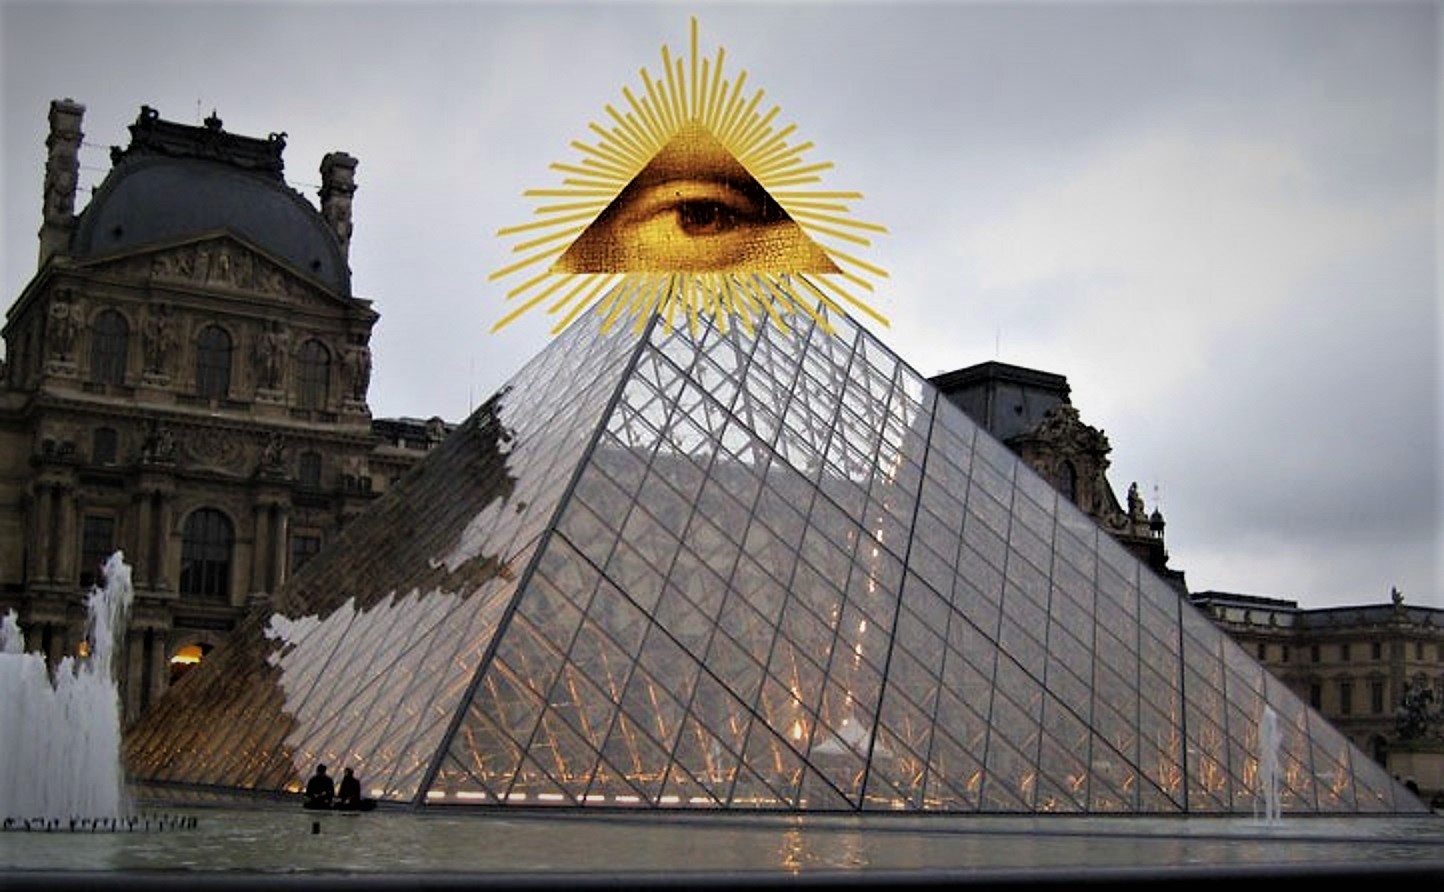 La pirámide del Louvre: El centro de poder Illuminati (Video)